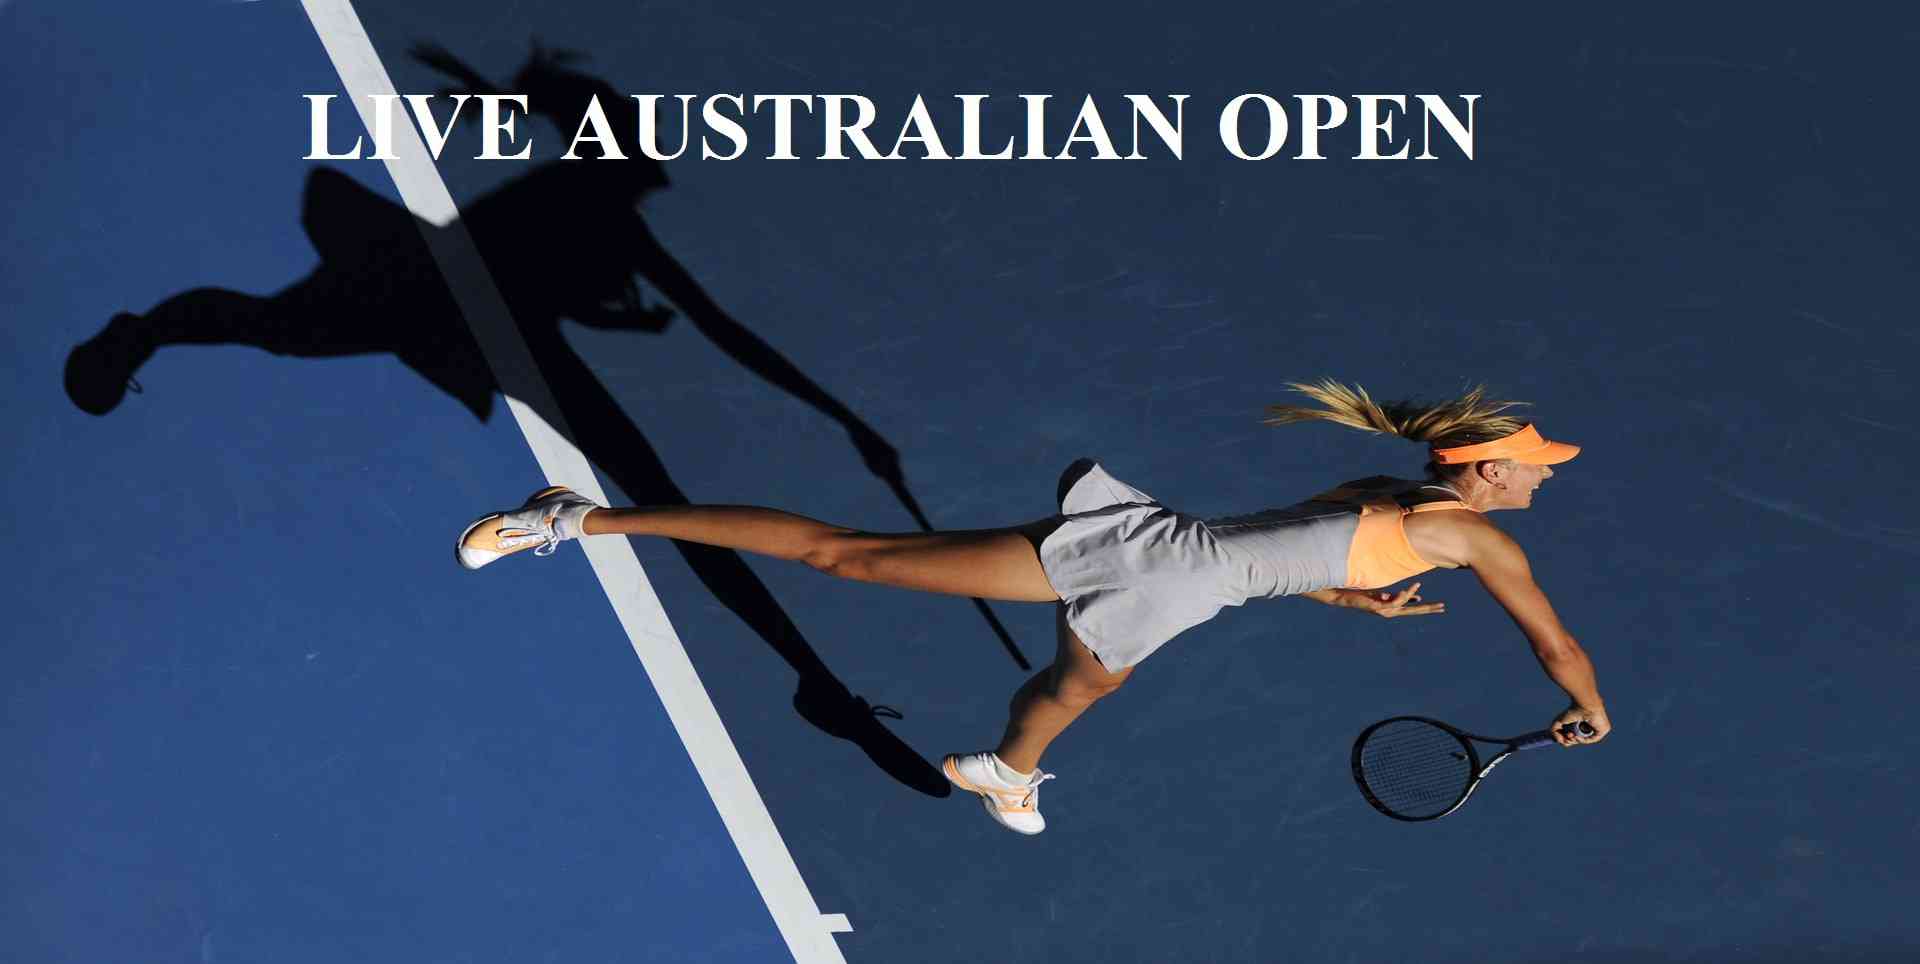 Australian Open 2018 Quarterfinals Live